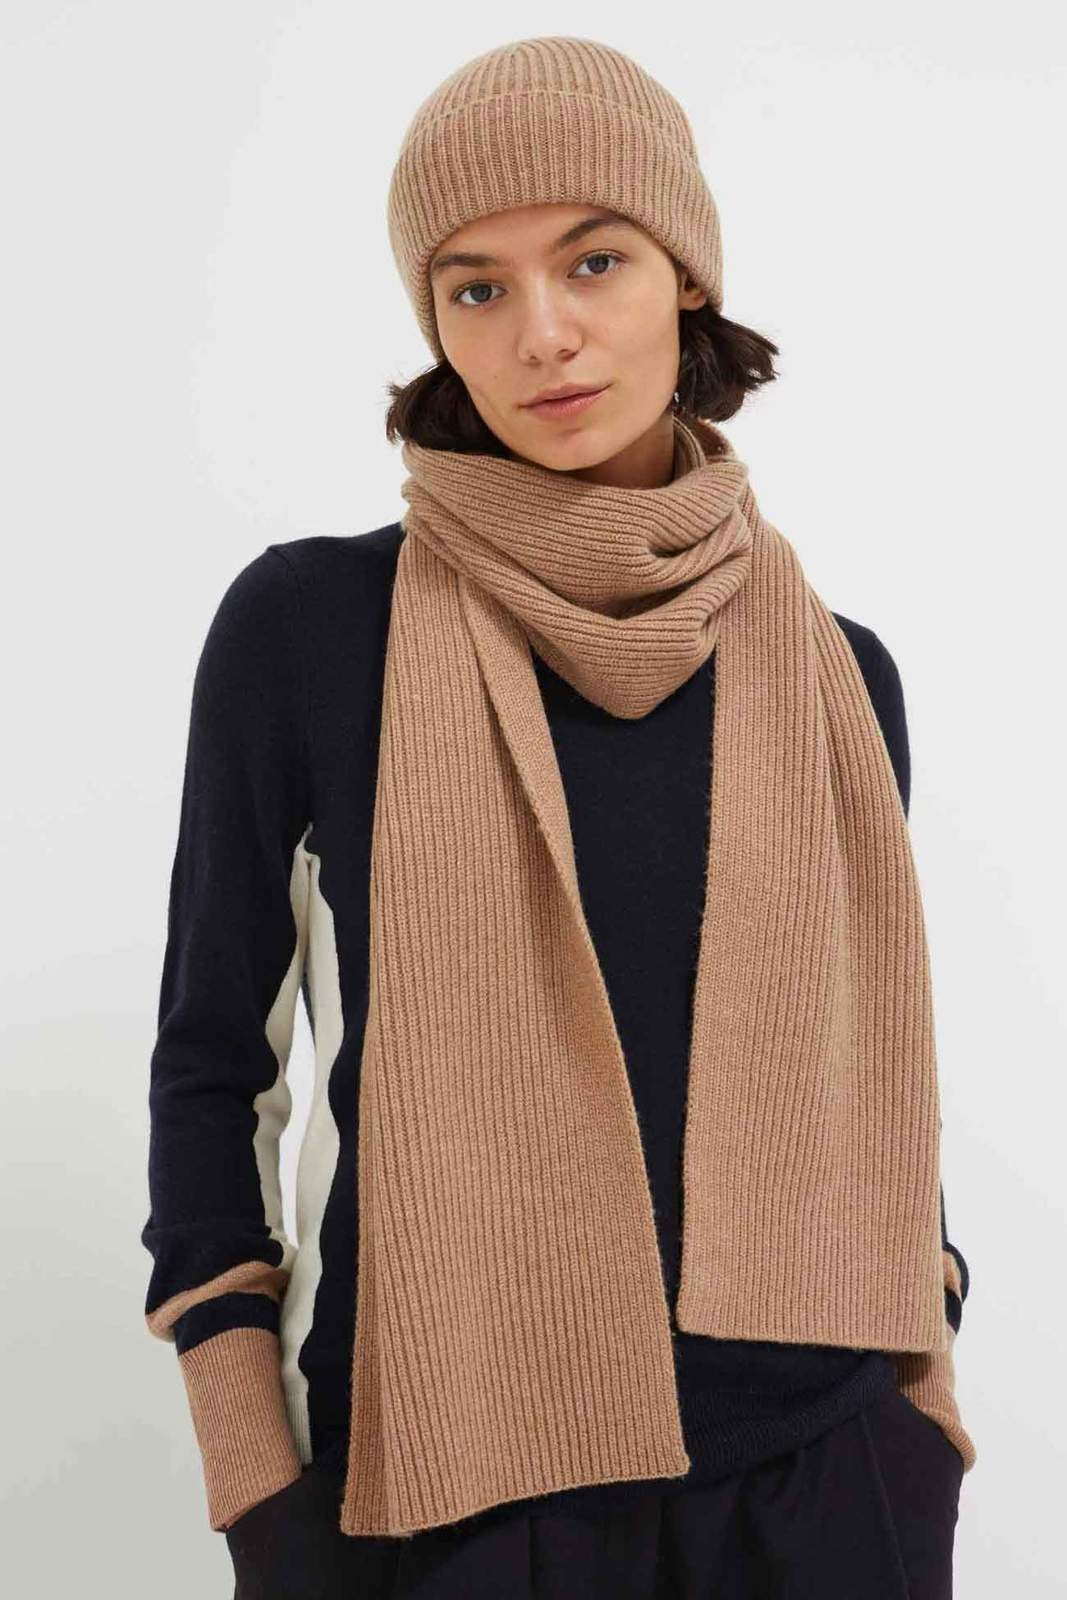 cashmere scarf beige